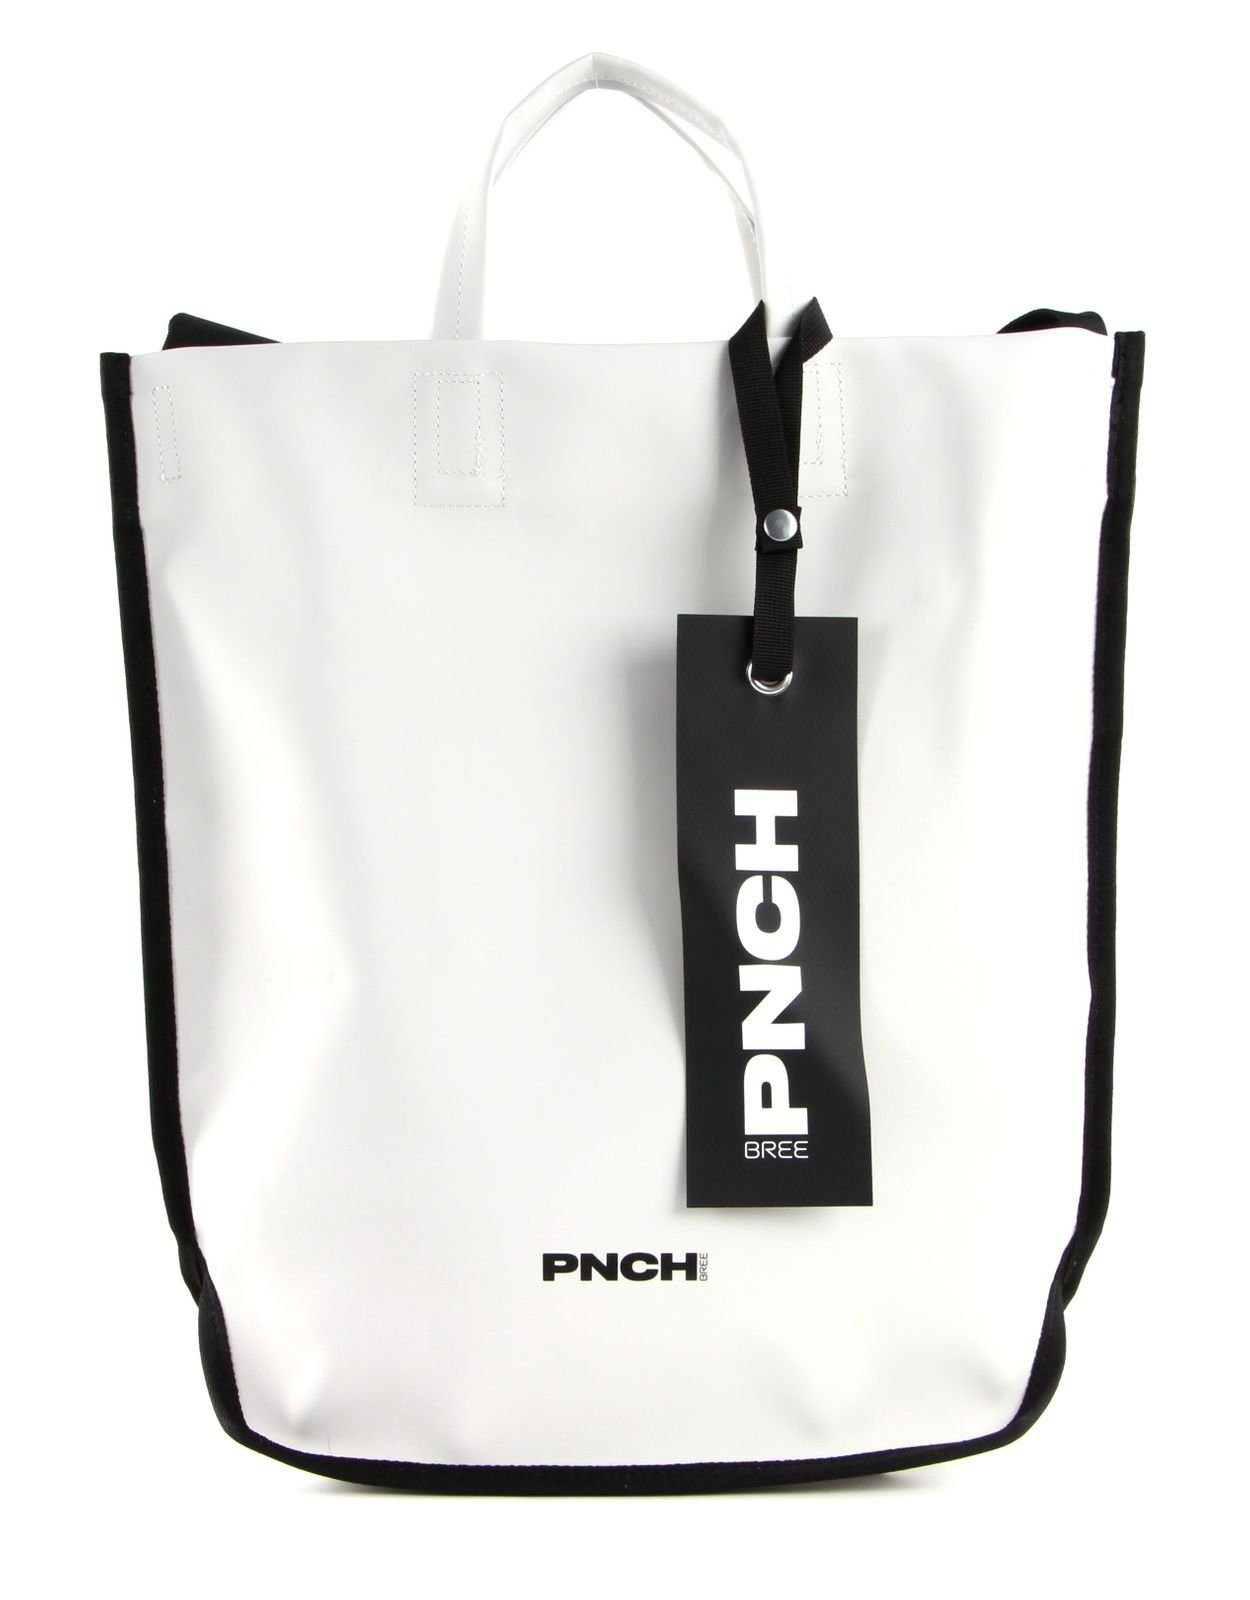 BREE Schultertasche »Punch Pro 50th« online kaufen | OTTO